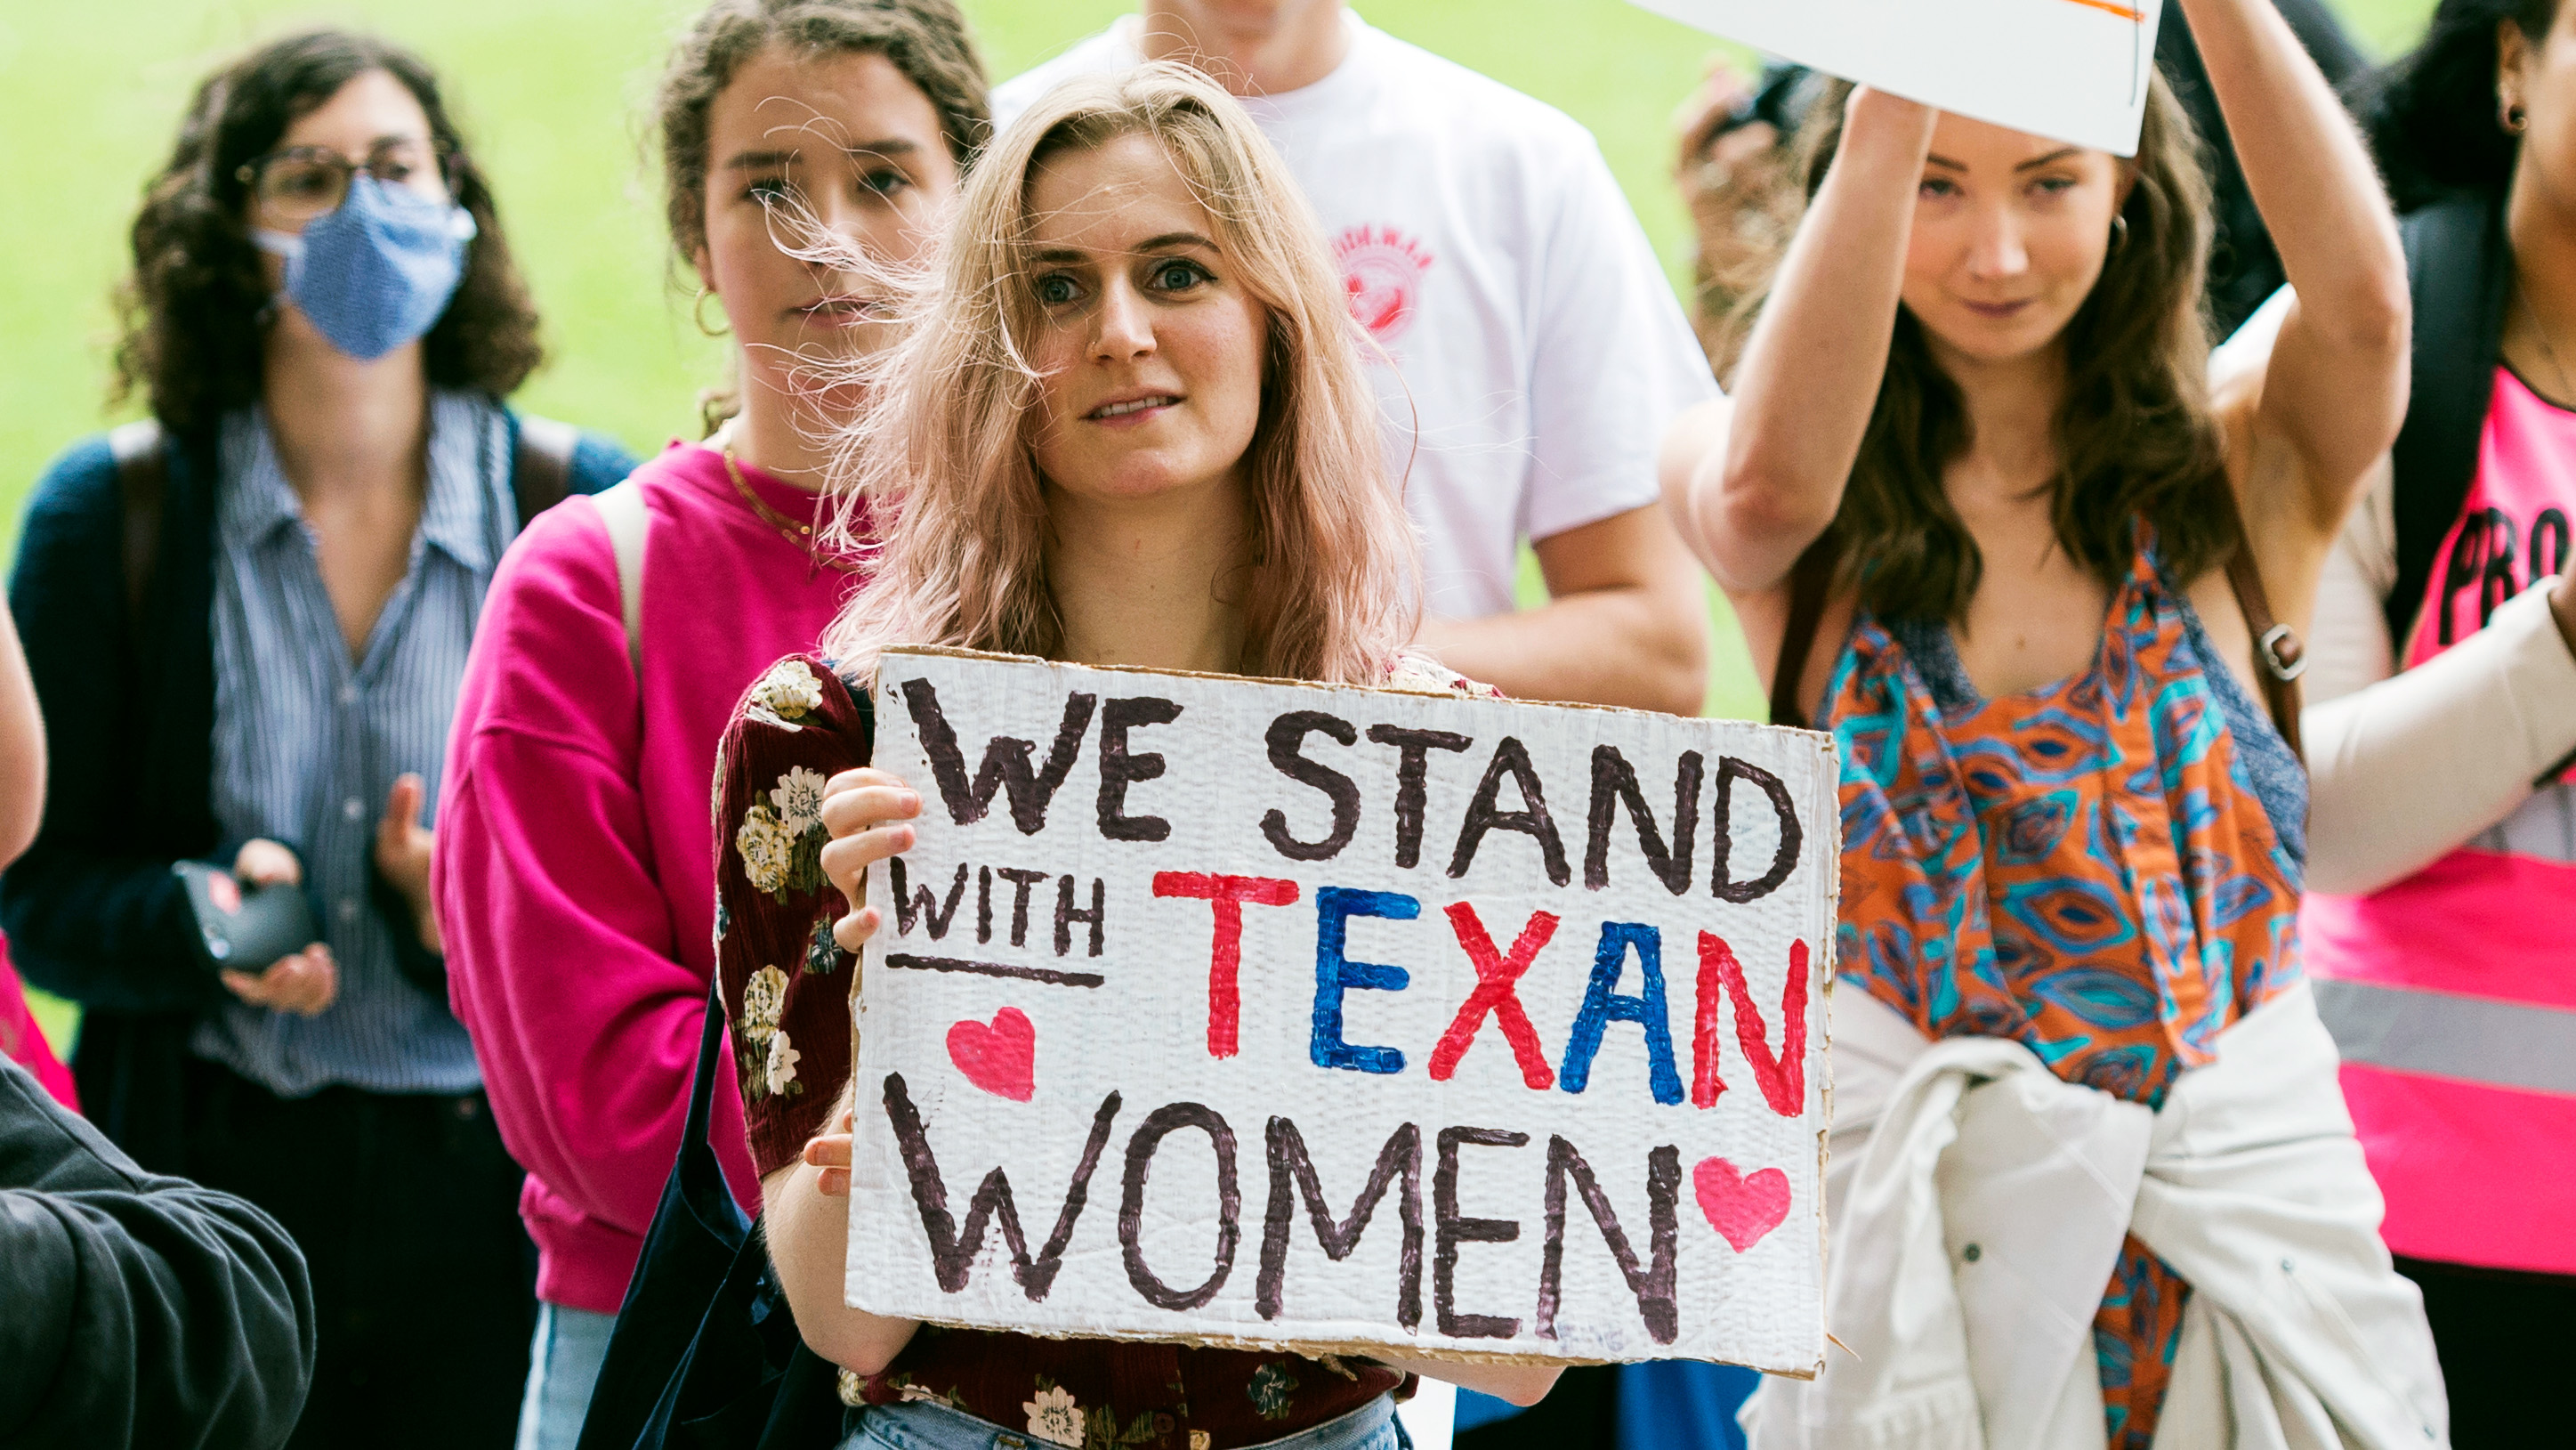  demonstranter i London uttrycker solidaritet med kvinnor i Texas där en ny lag förbjuder aborter efter 6 veckor 